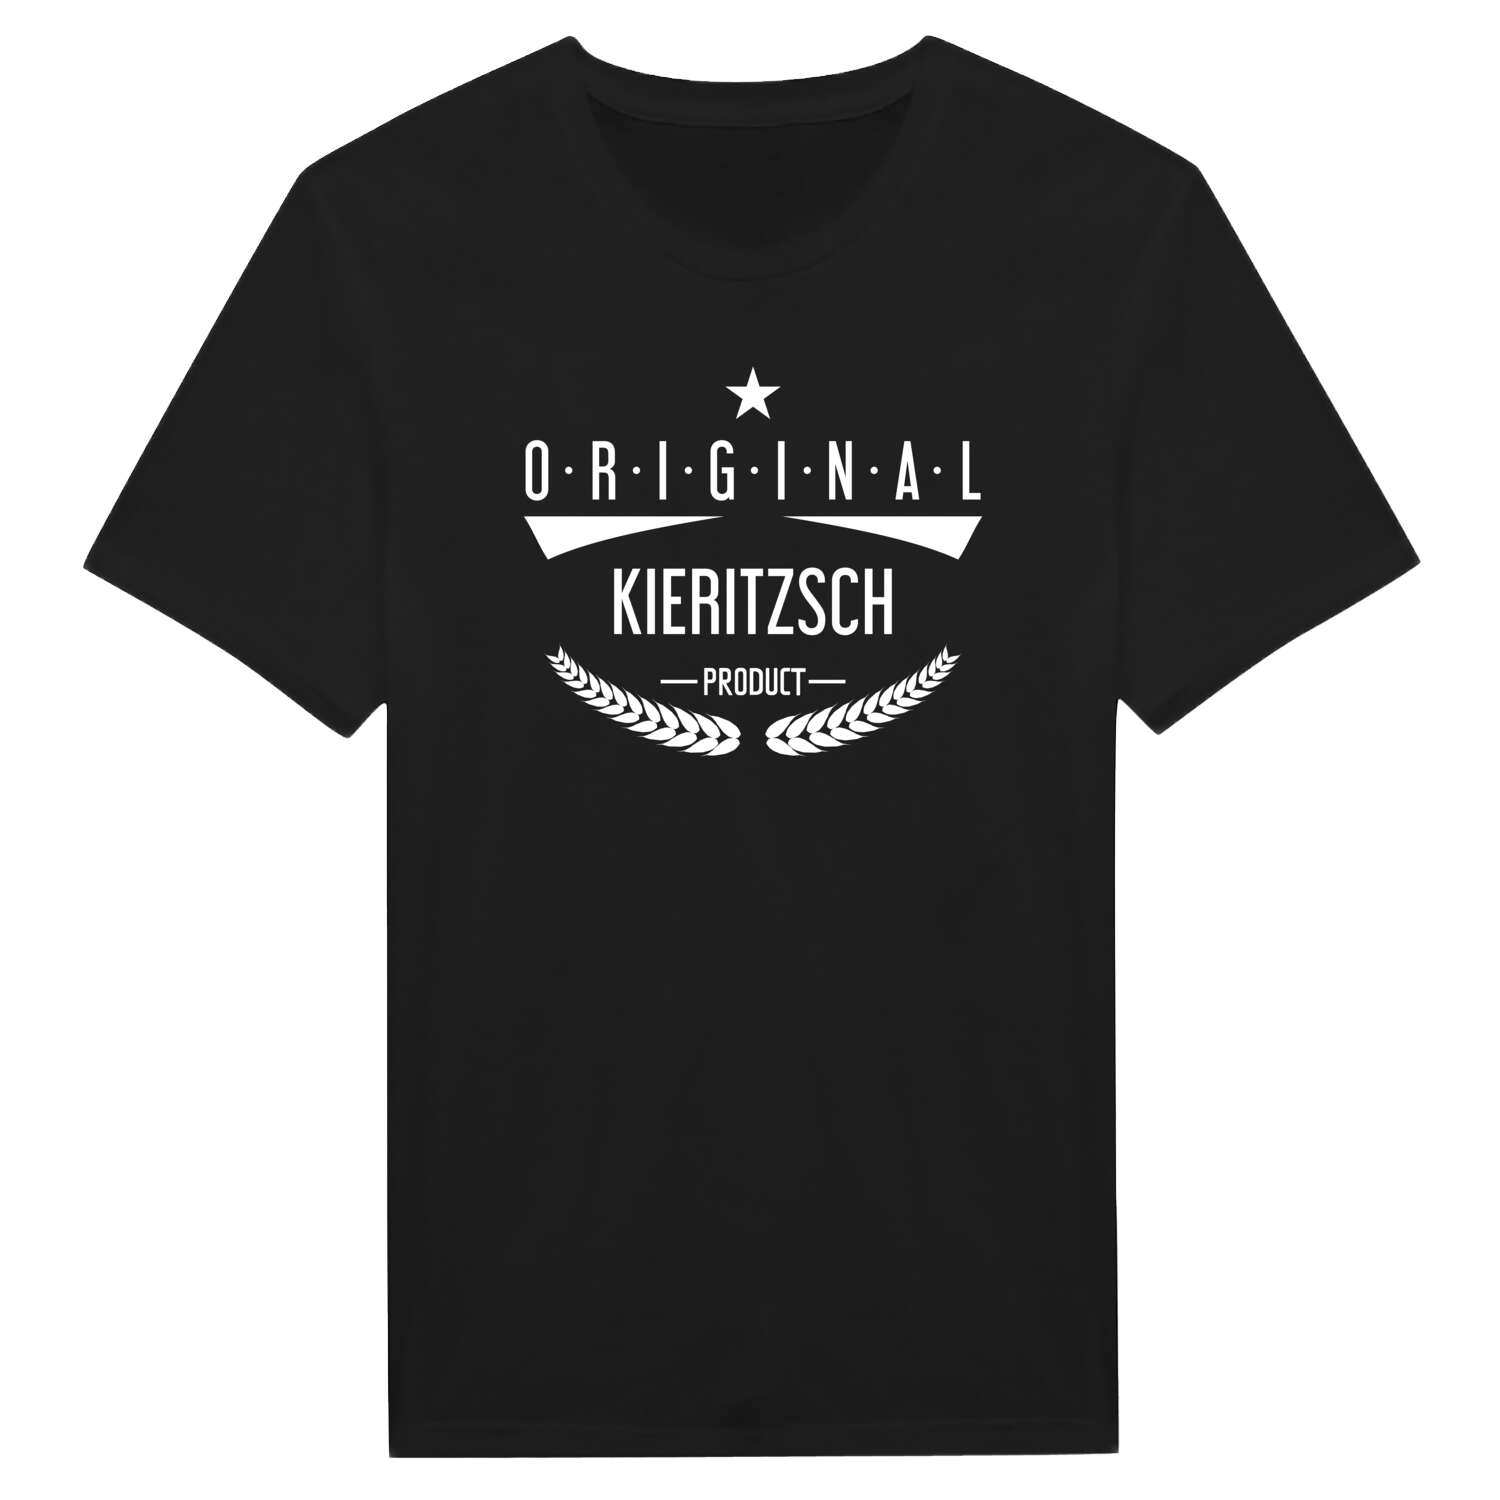 Kieritzsch T-Shirt »Original Product«